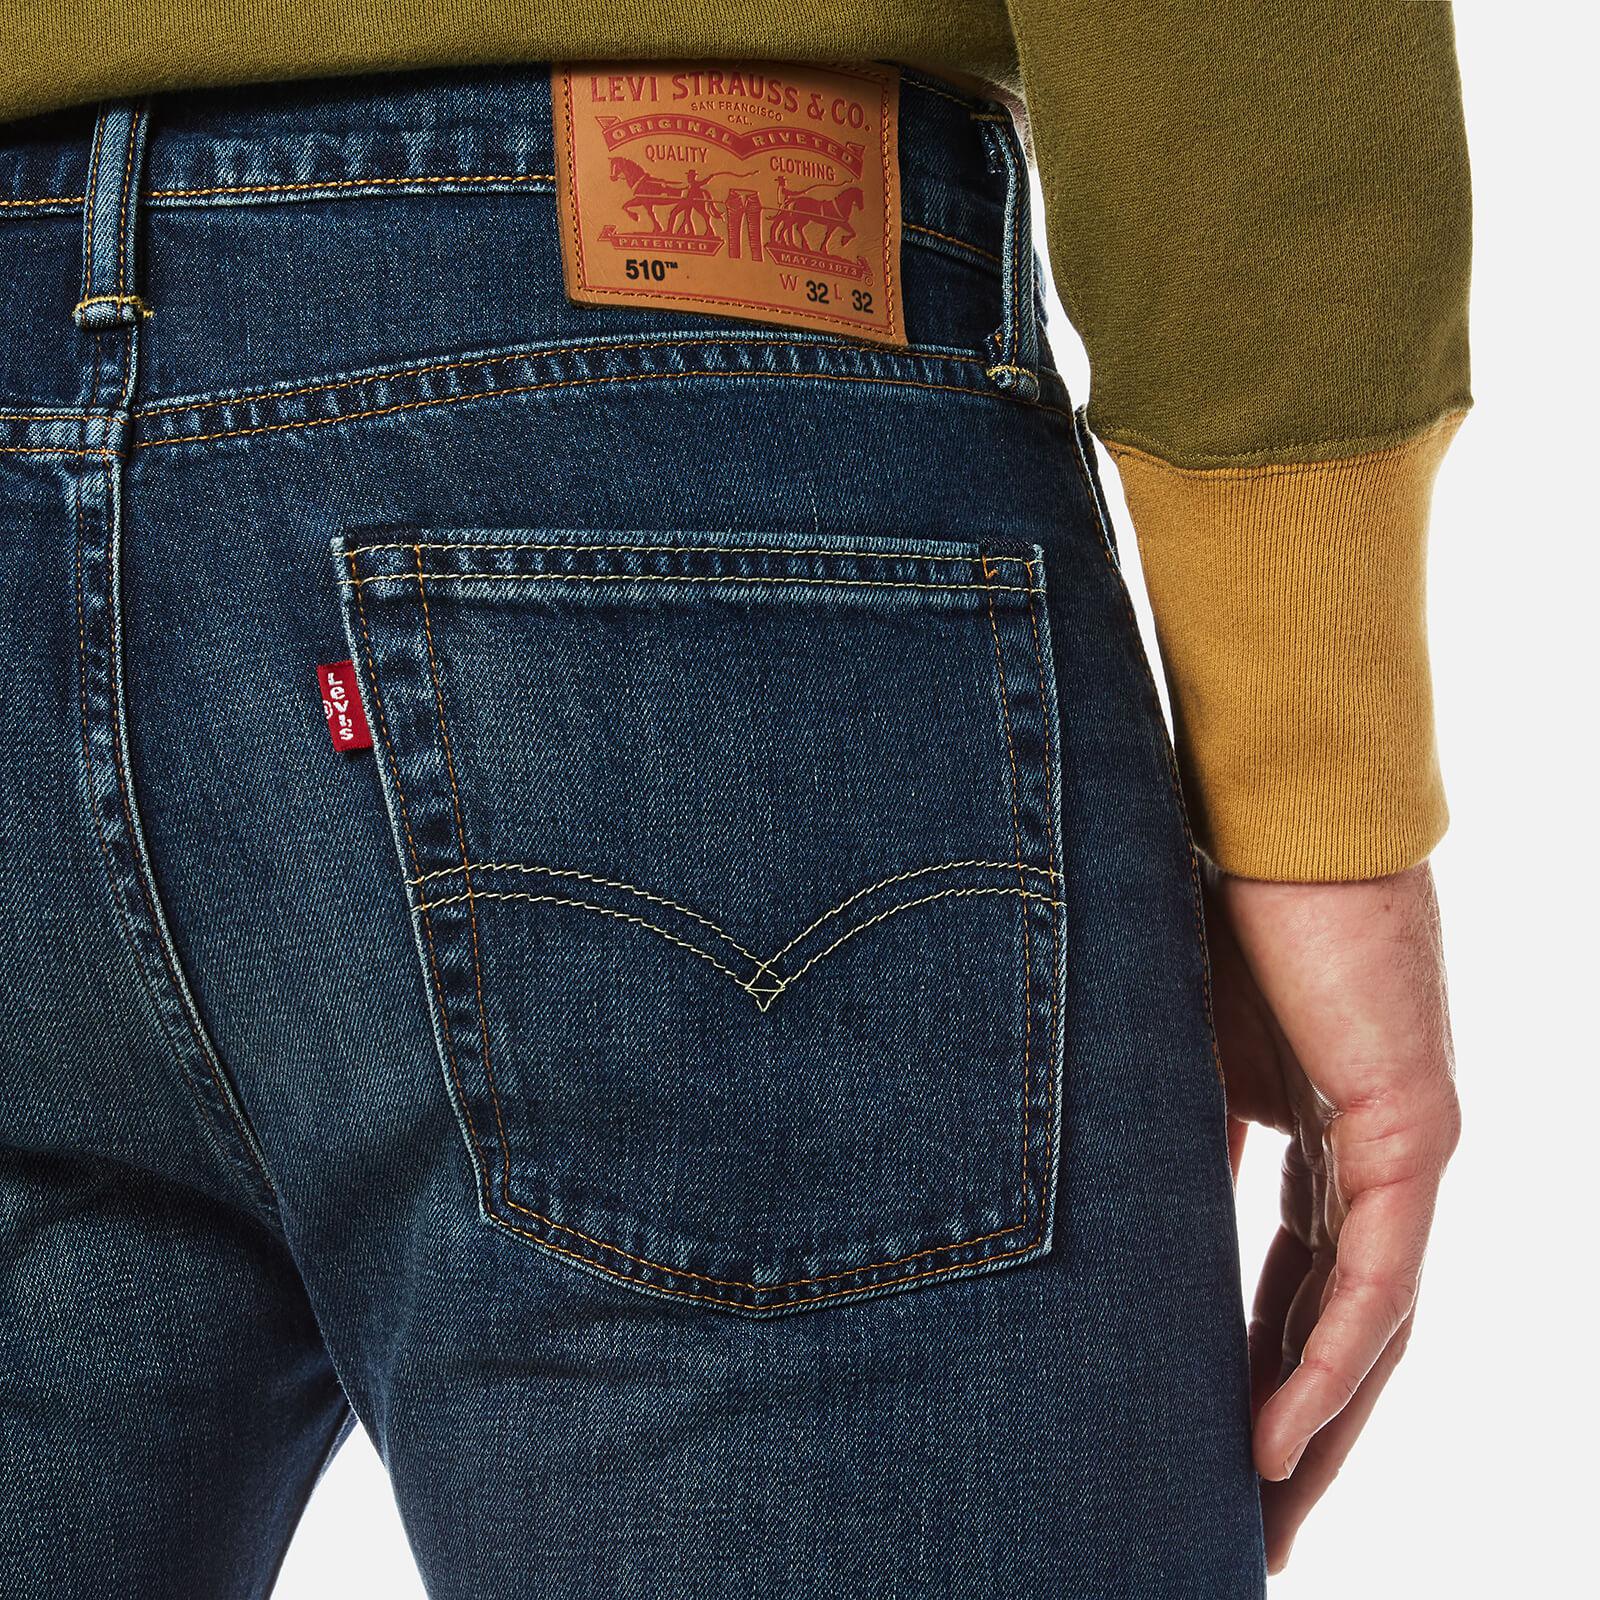 501 Skinny Jeans Men – Telegraph